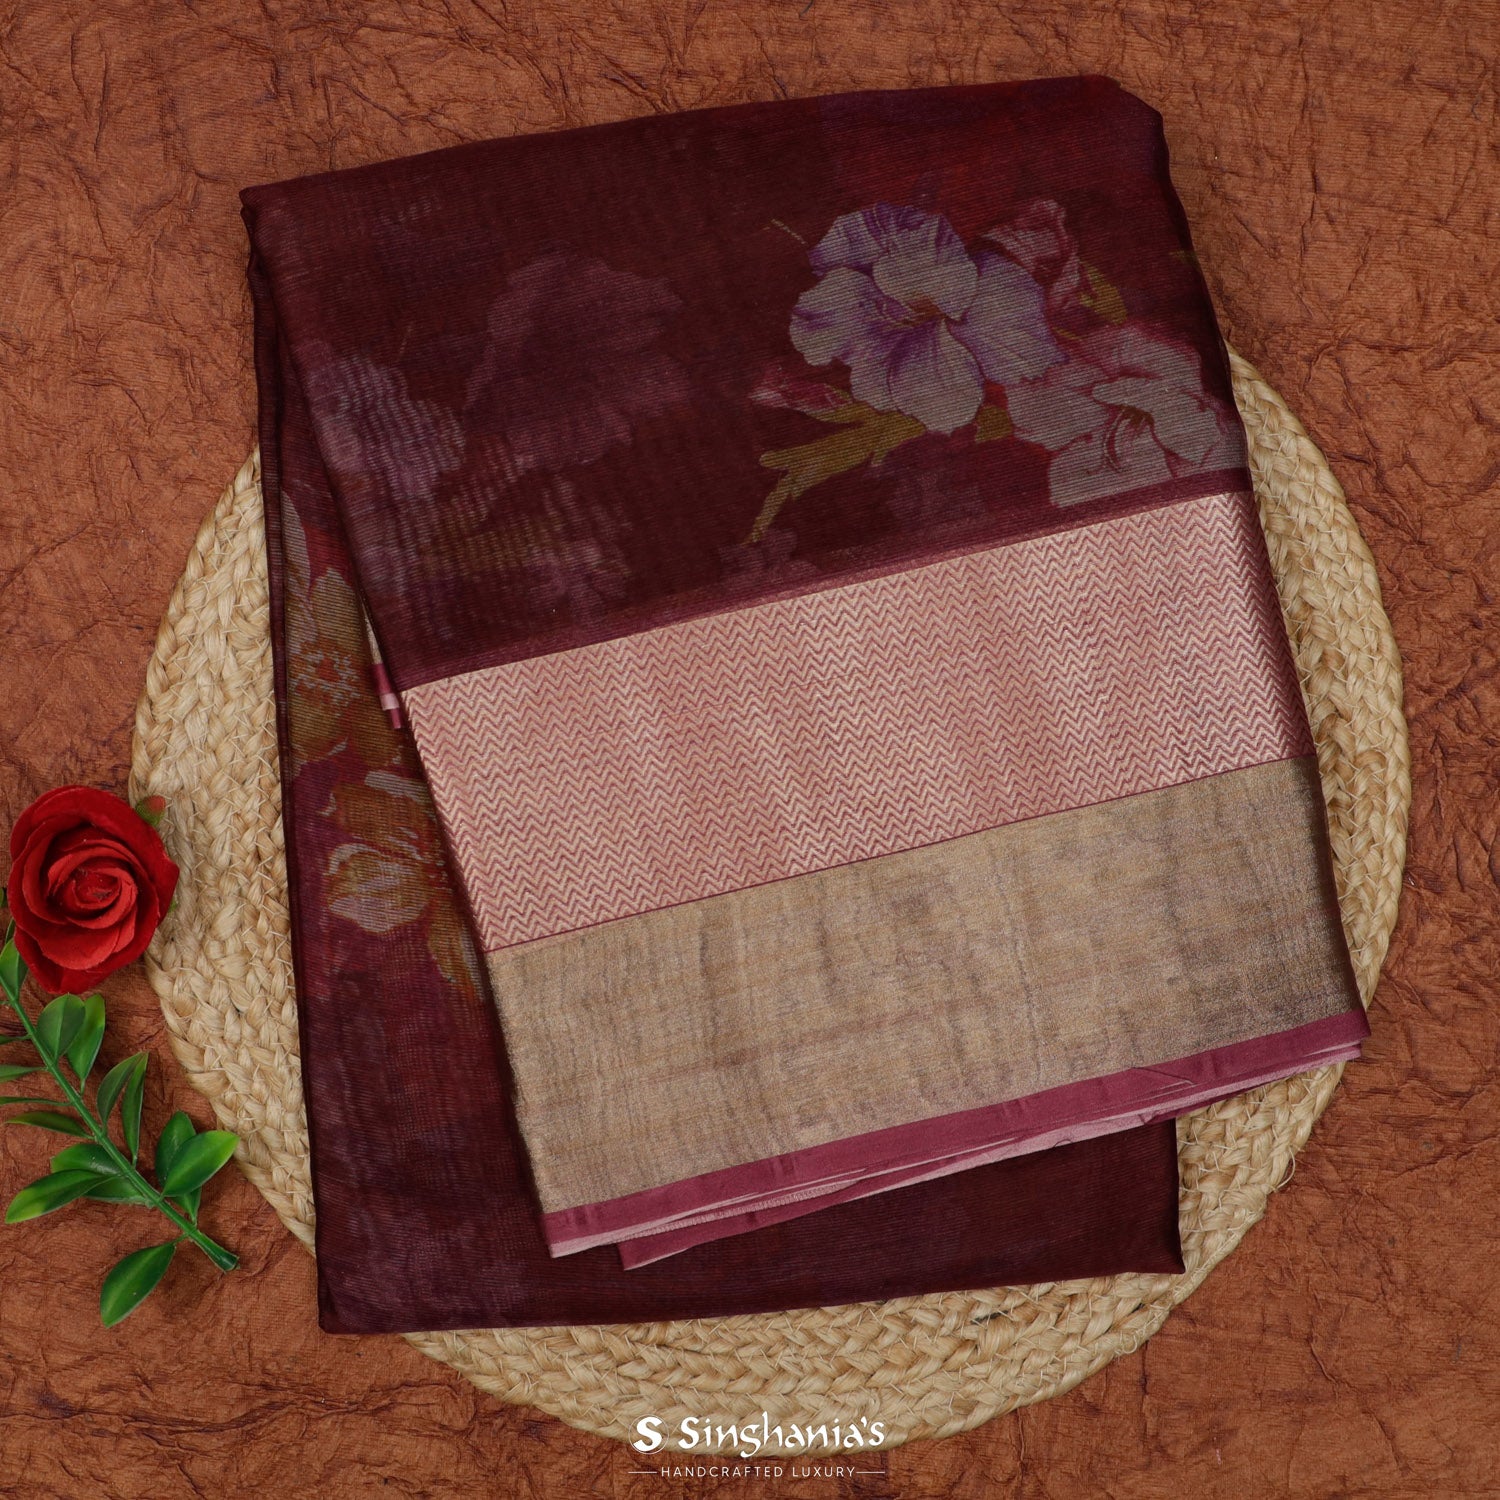 Mahogany Printed Maheshwari Saree With Floral Pattern